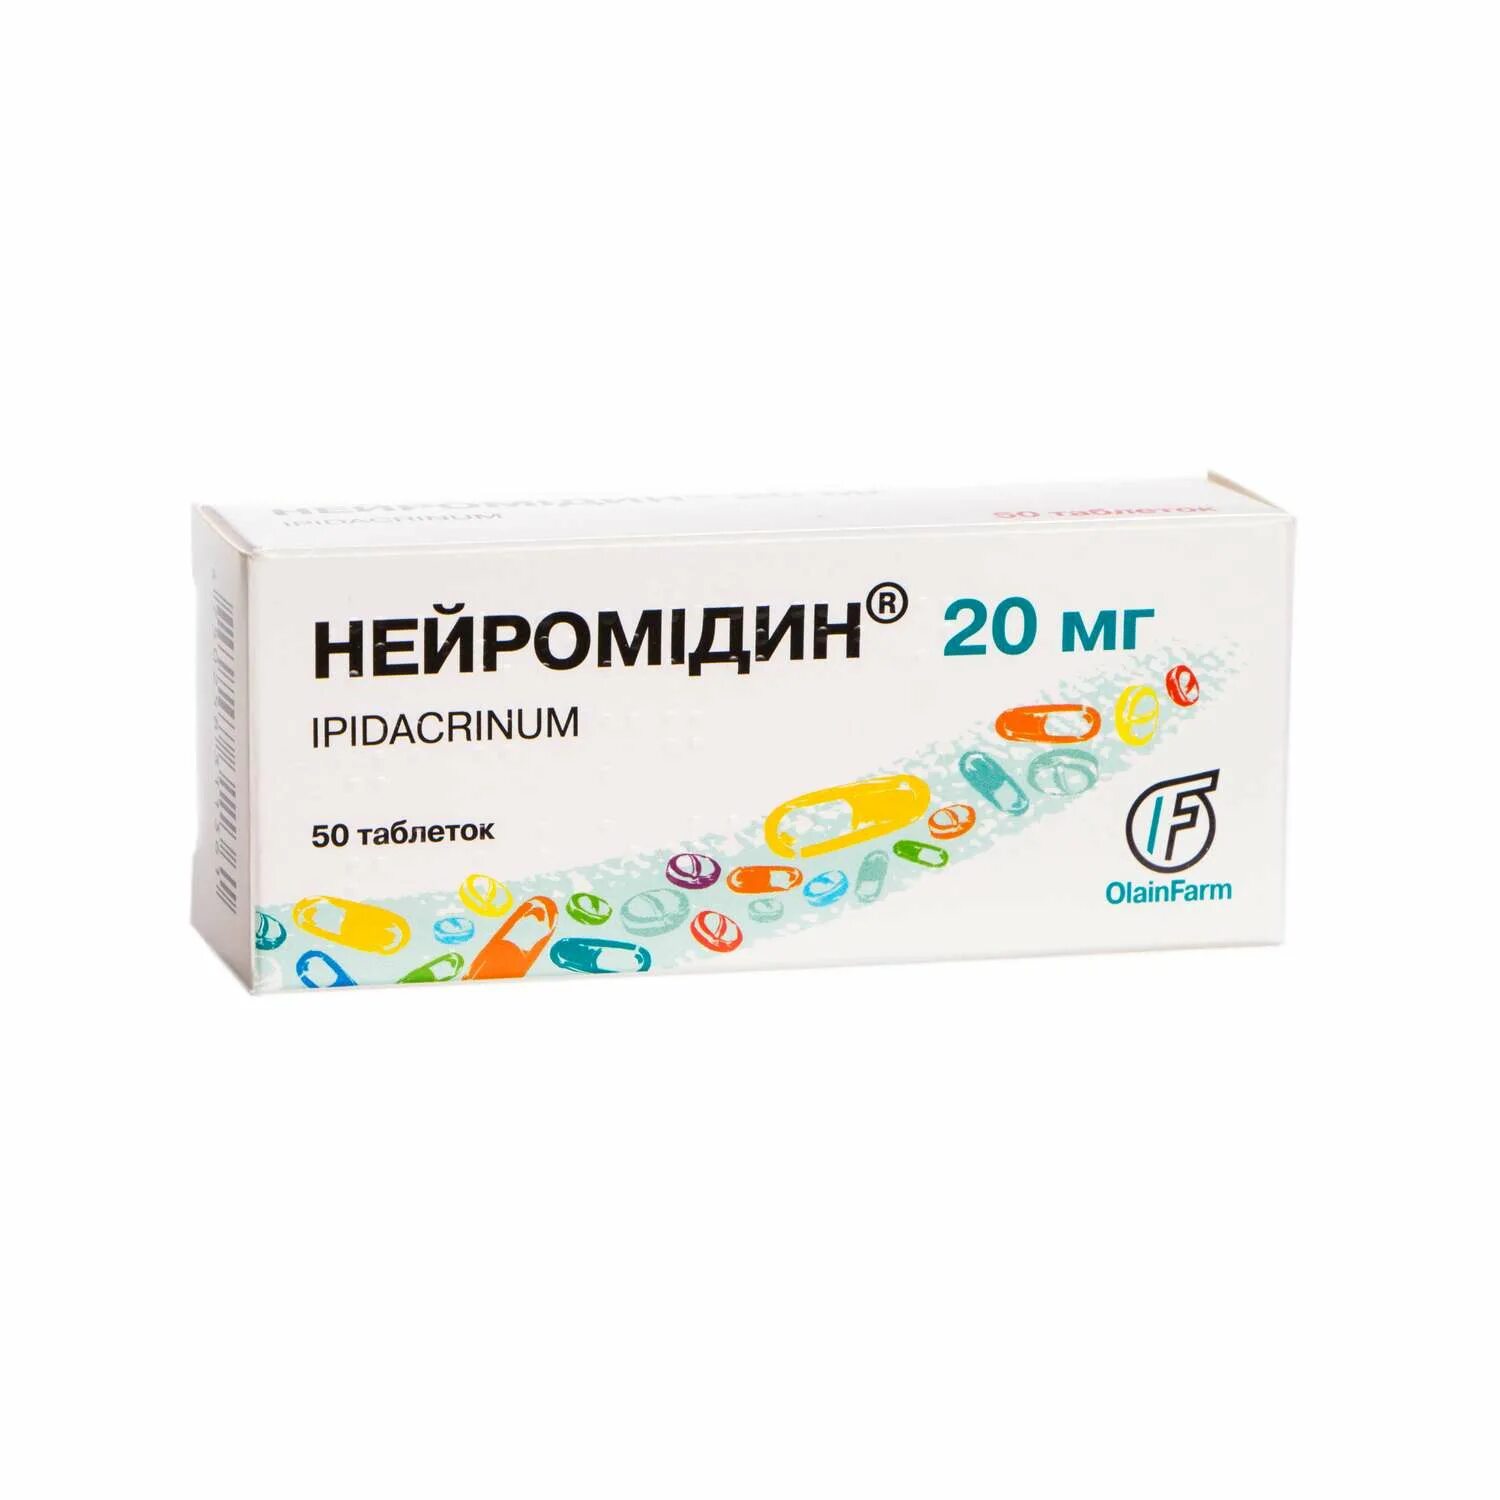 Нейромидин состав. Нейромидин таблетки 20 мг, 50 шт. Олайнфарм. Нейромидин таб 20мг. Нейромидин, таблетки 20мг №50. Нейромидин таблетки 20мг 50шт.